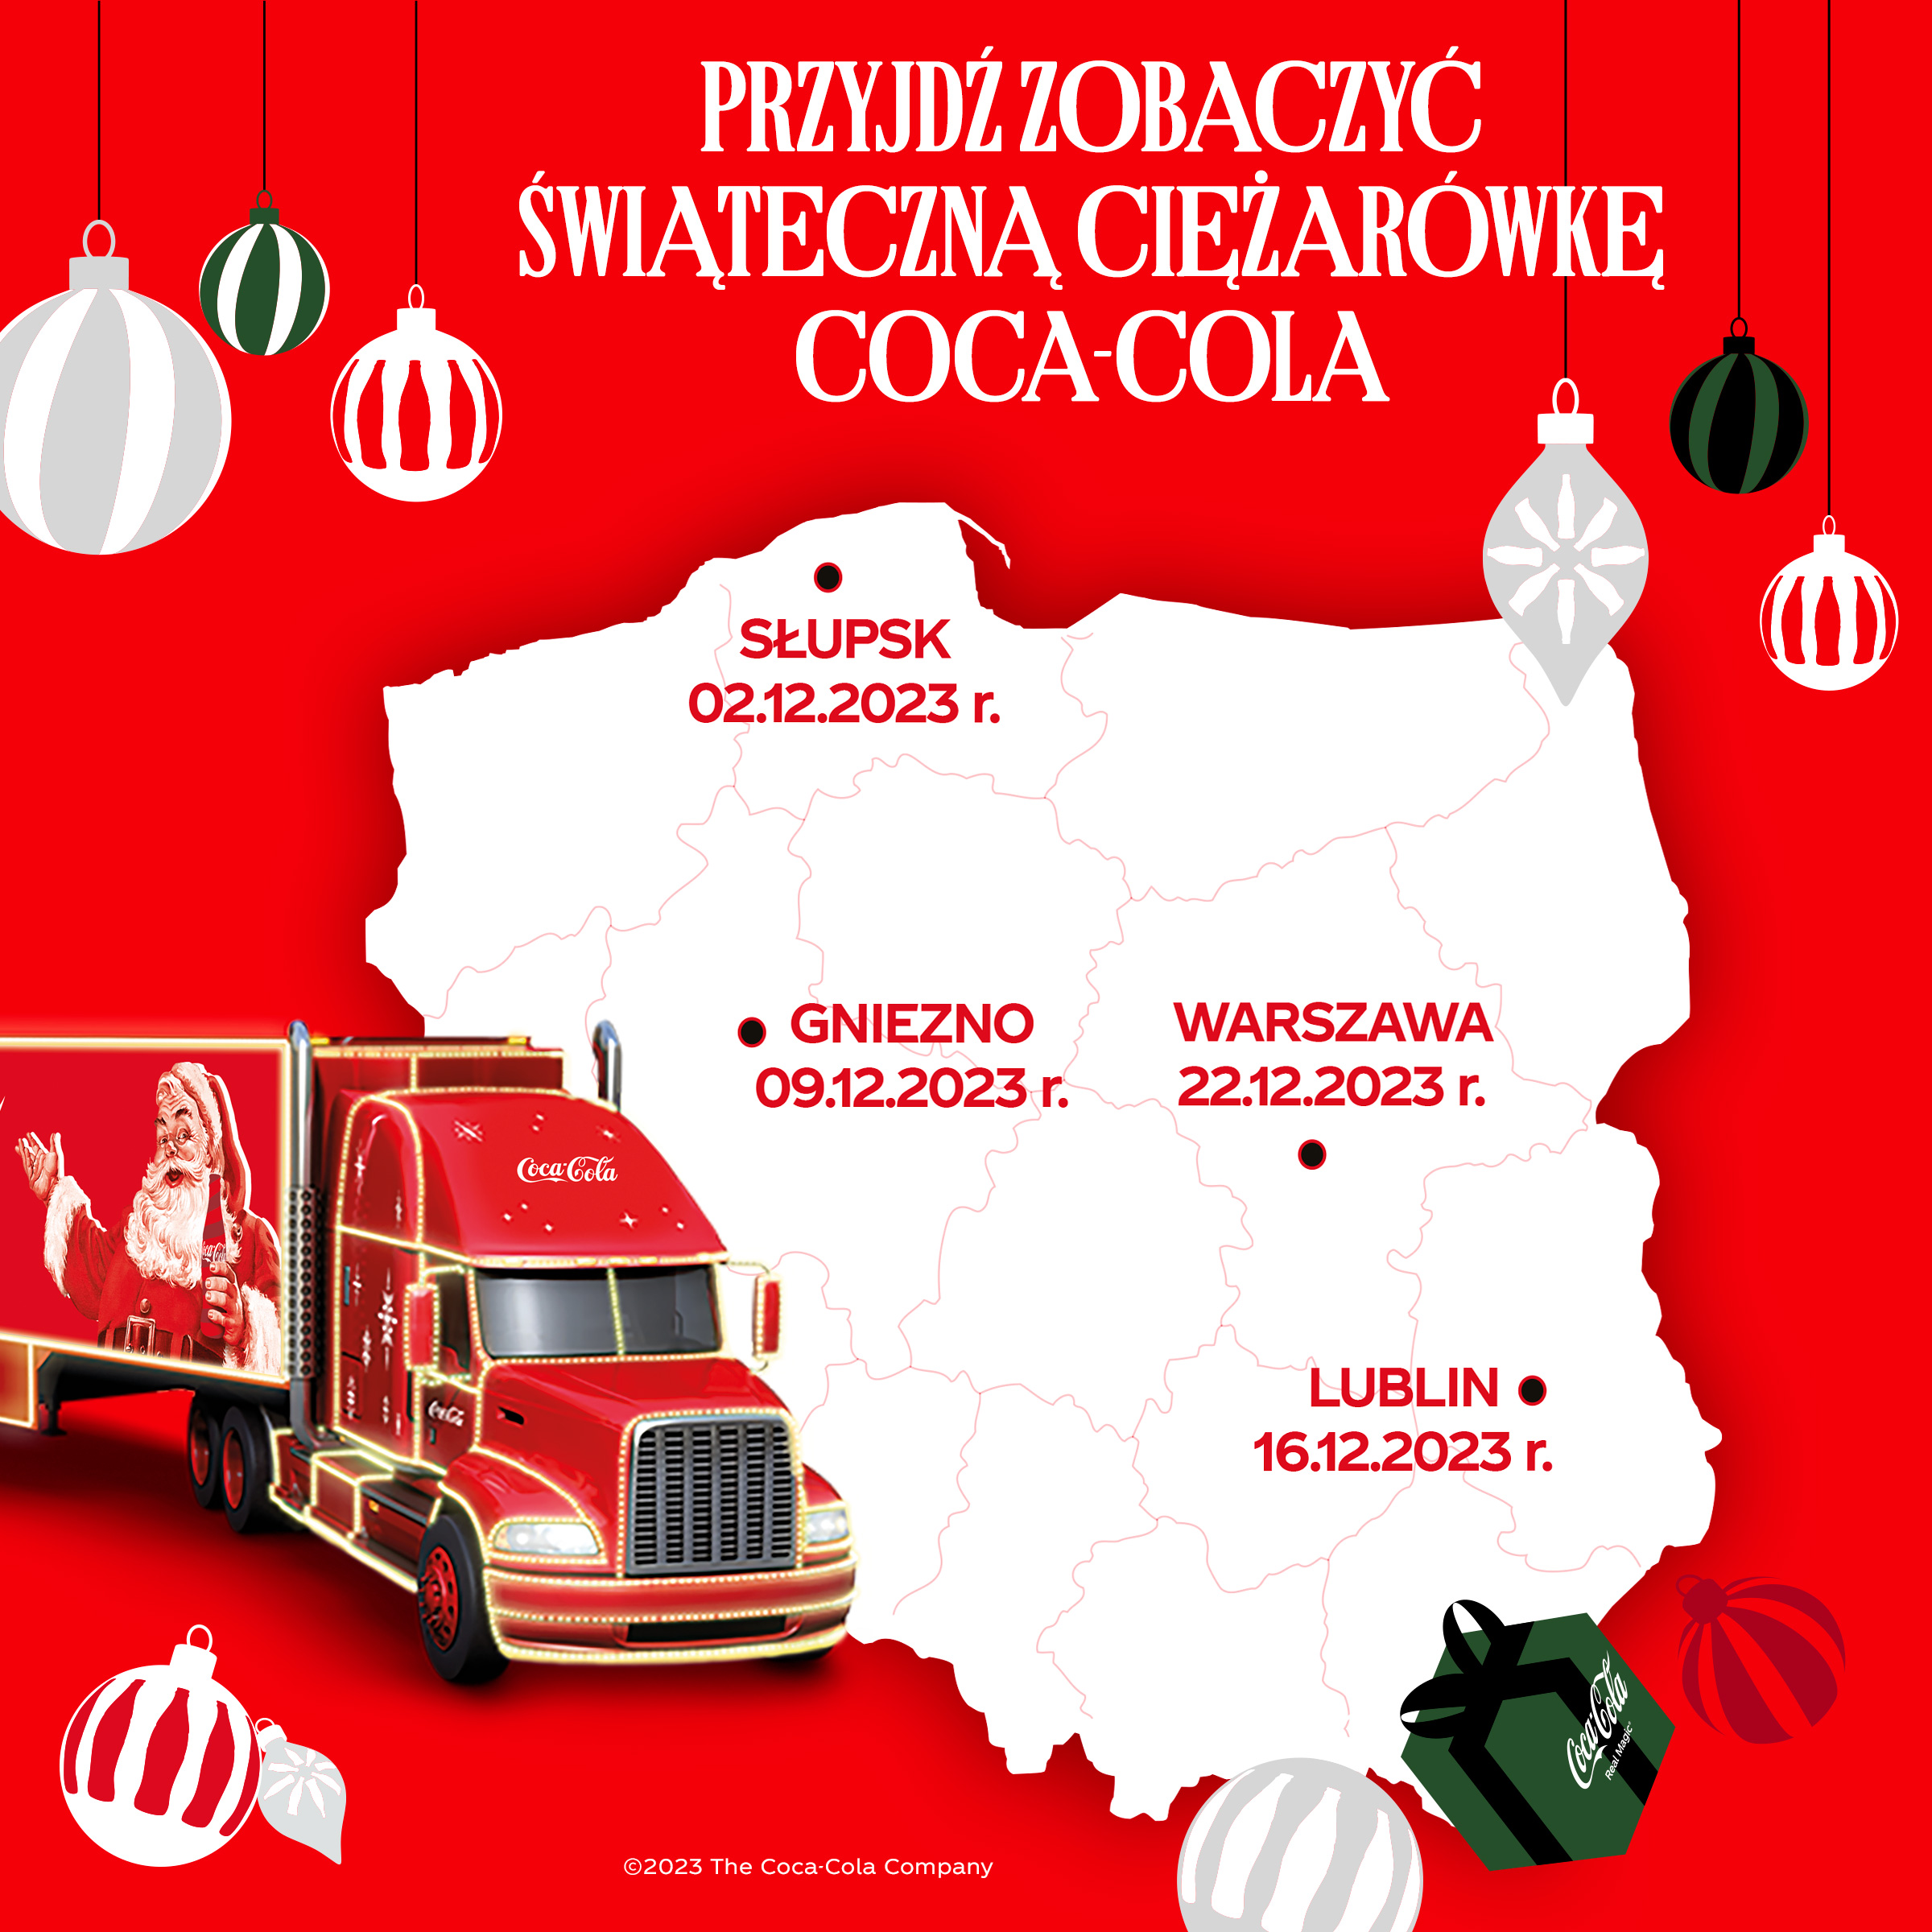  Świat potrzebuje więcej Mikołajów:  Coca-Cola Polska wspólnie z Polskim Czerwonym Krzyżem zachęcają do wsparcia potrzebujących 